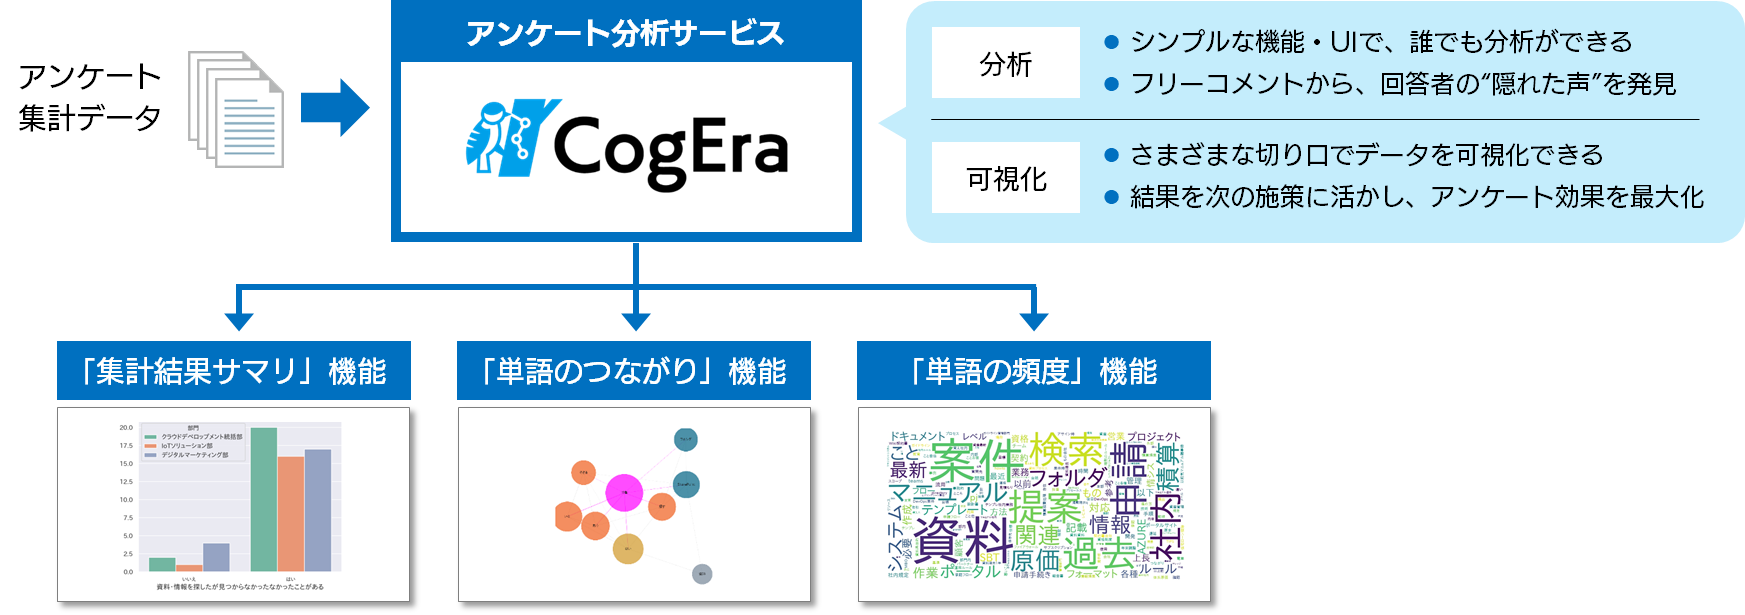 自然言語処理技術を活用したアンケート分析サービス Cogera 提供開始 Sbtのプレスリリース